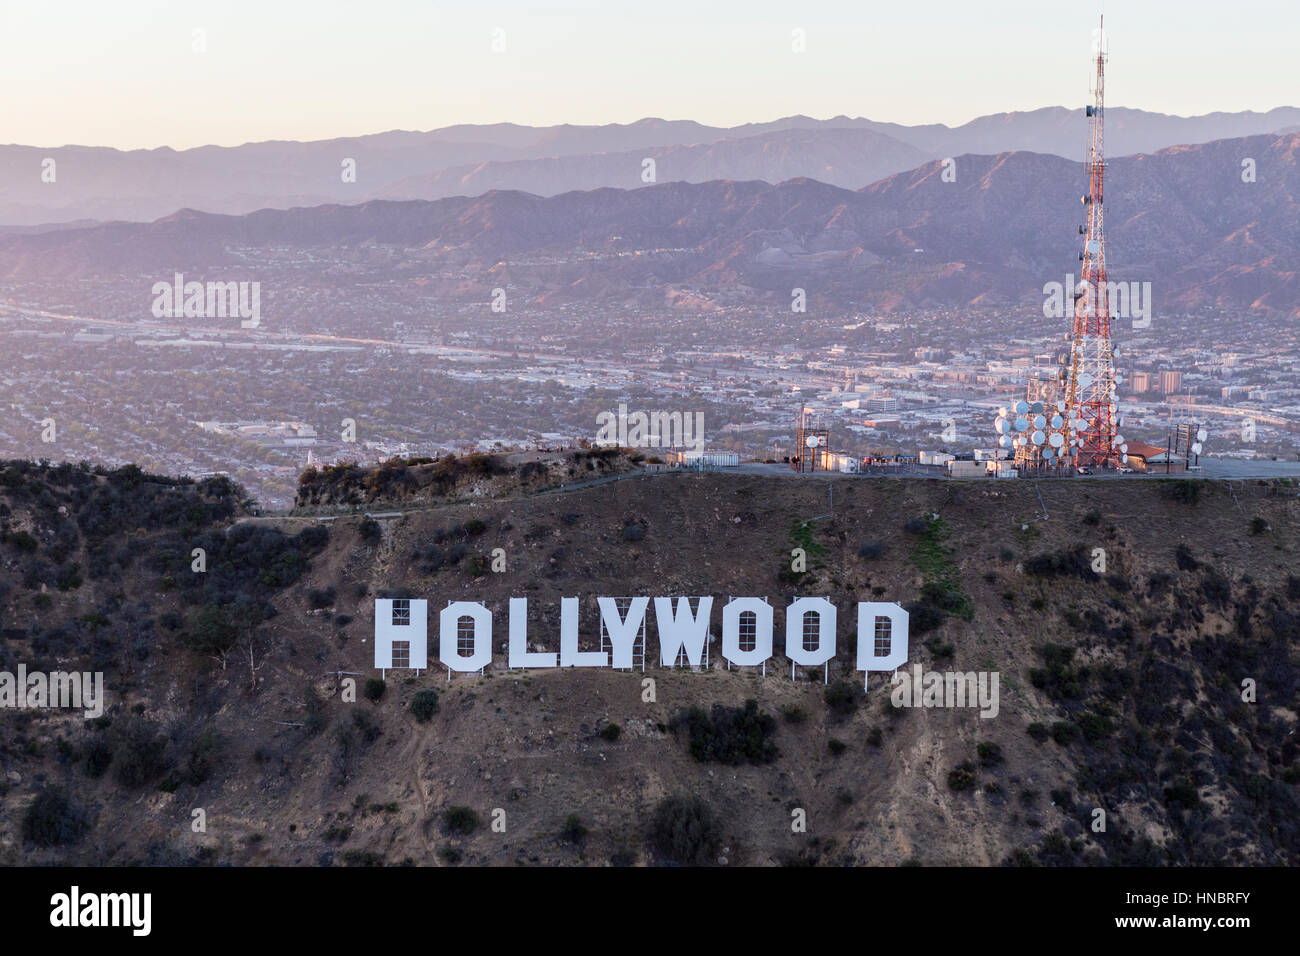 Los Angeles, Californie, USA - 21 juillet 2016 : La fin de l'après-midi de l'antenne panneau Hollywood dans Griffith Park avec la vallée de San Fernando en arrière-plan Banque D'Images